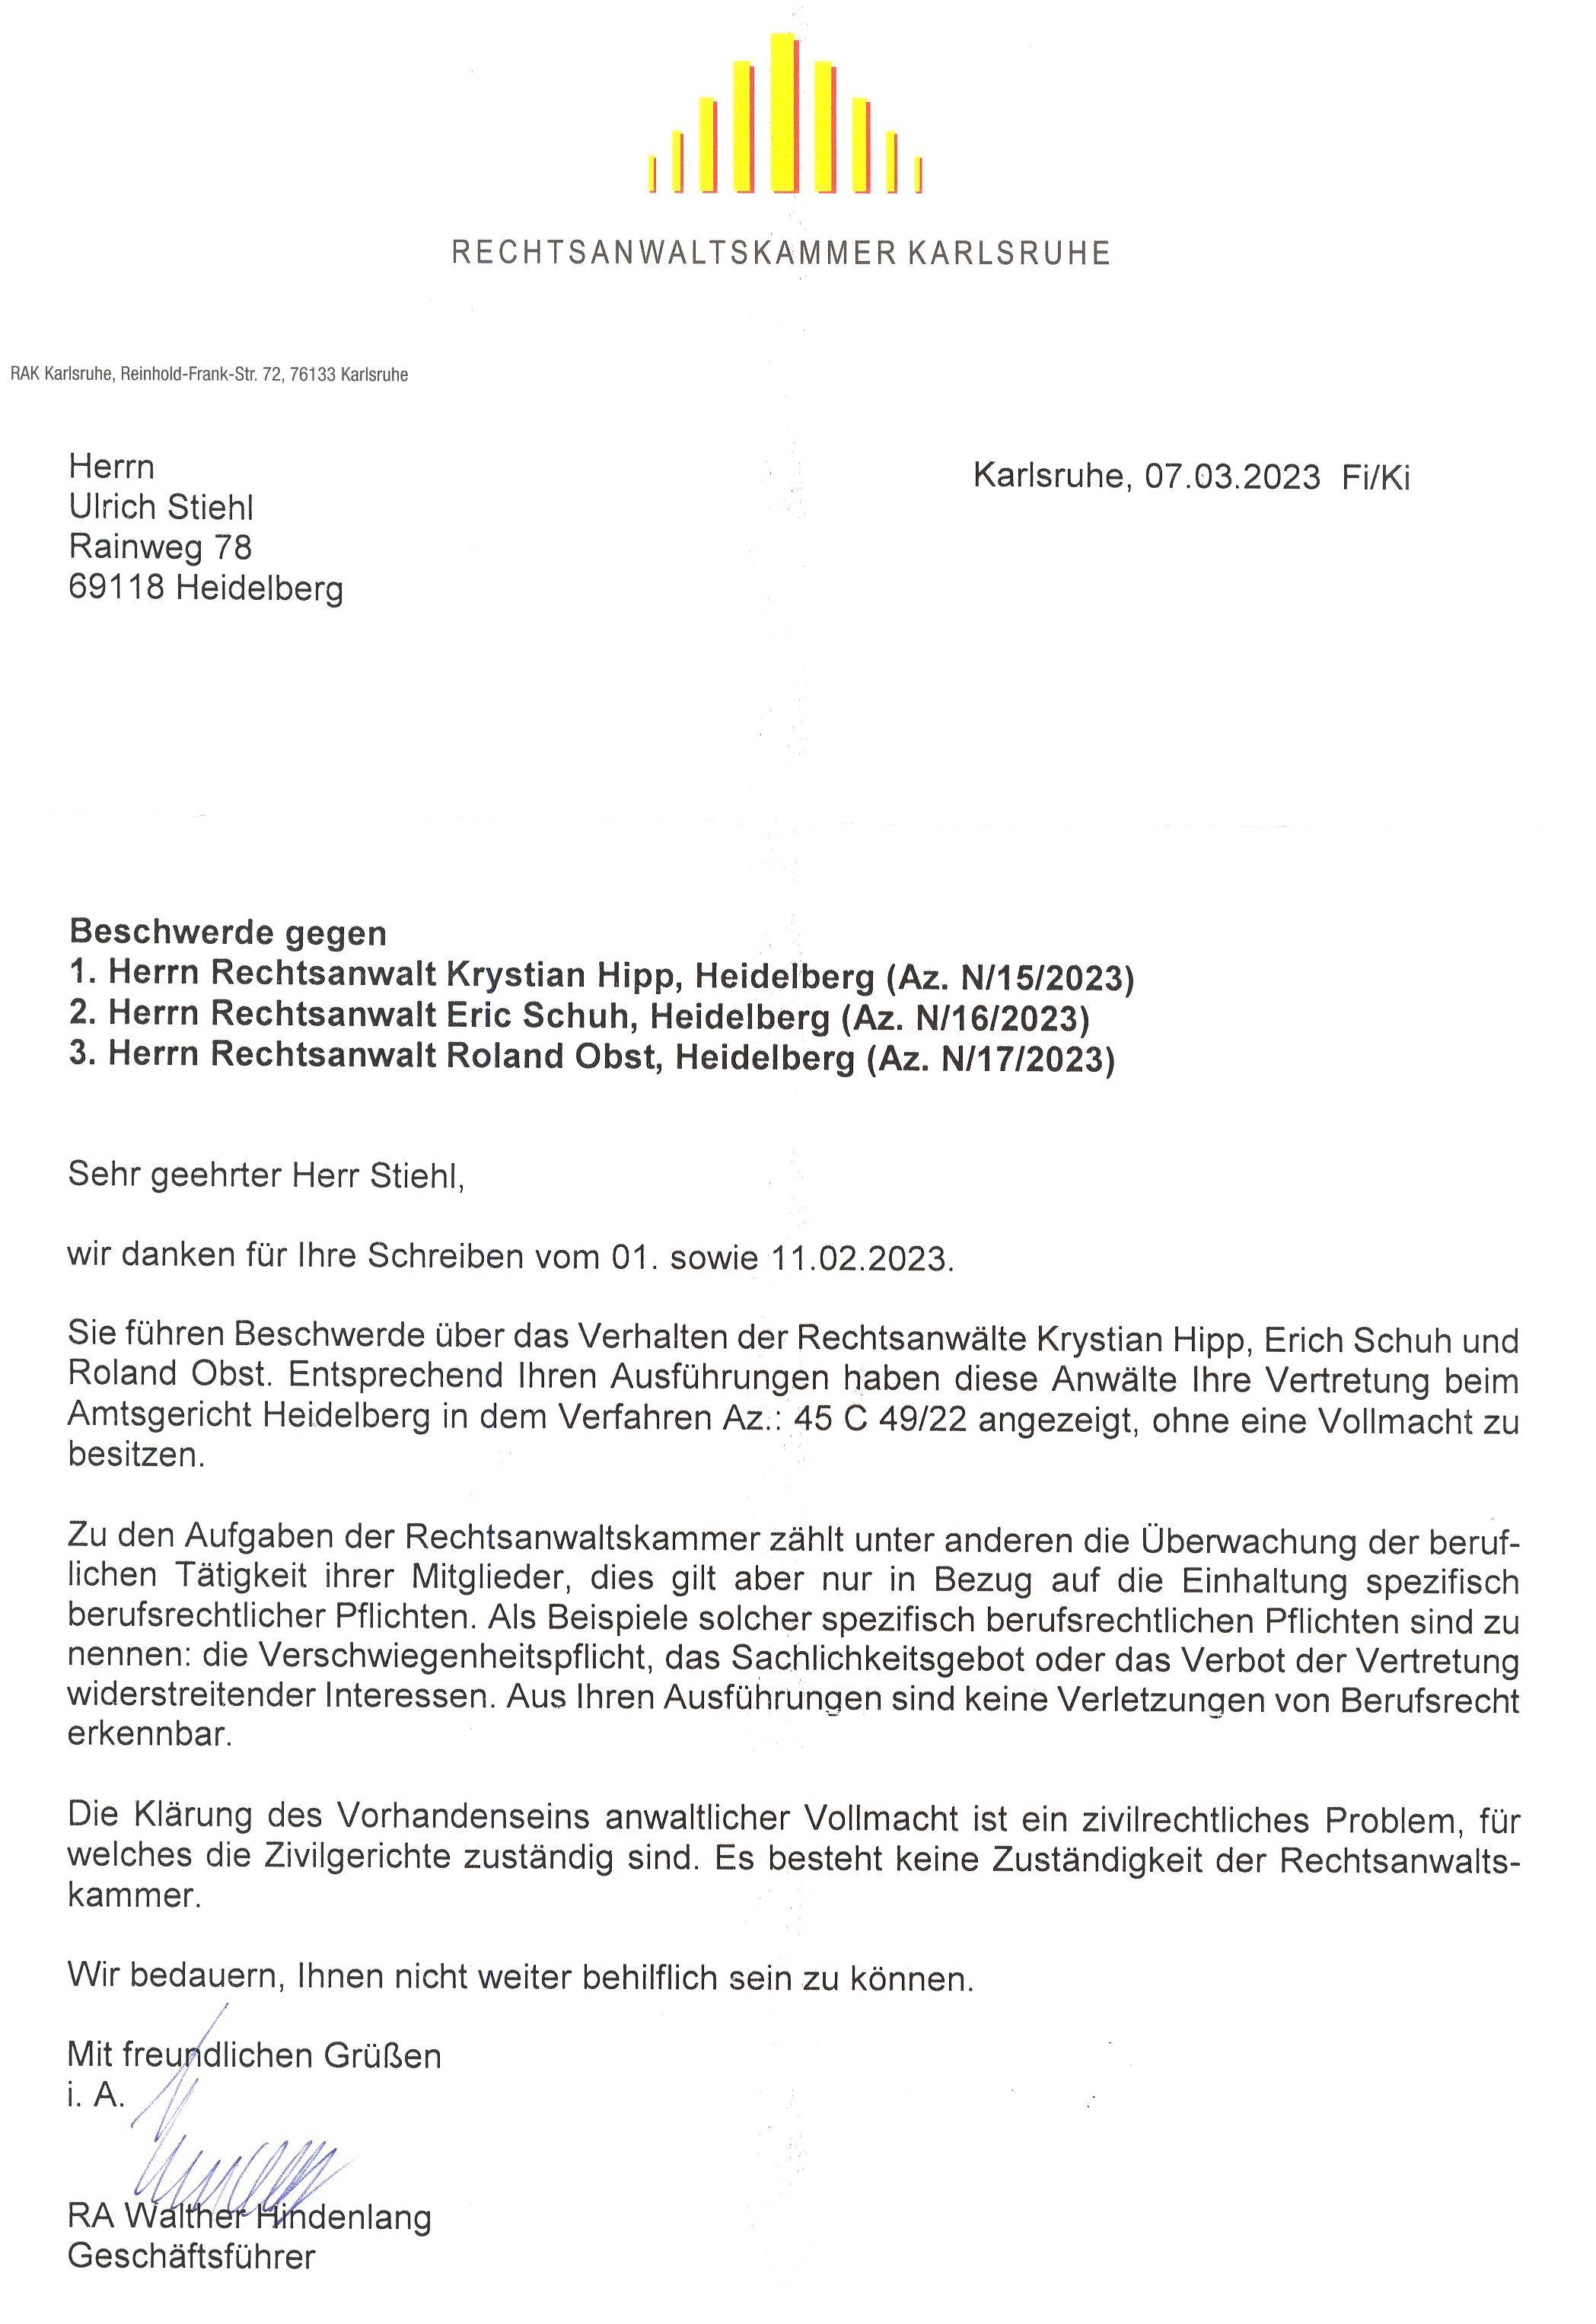 Schreiben der RAK Karlsruhe vom 07.03.2023